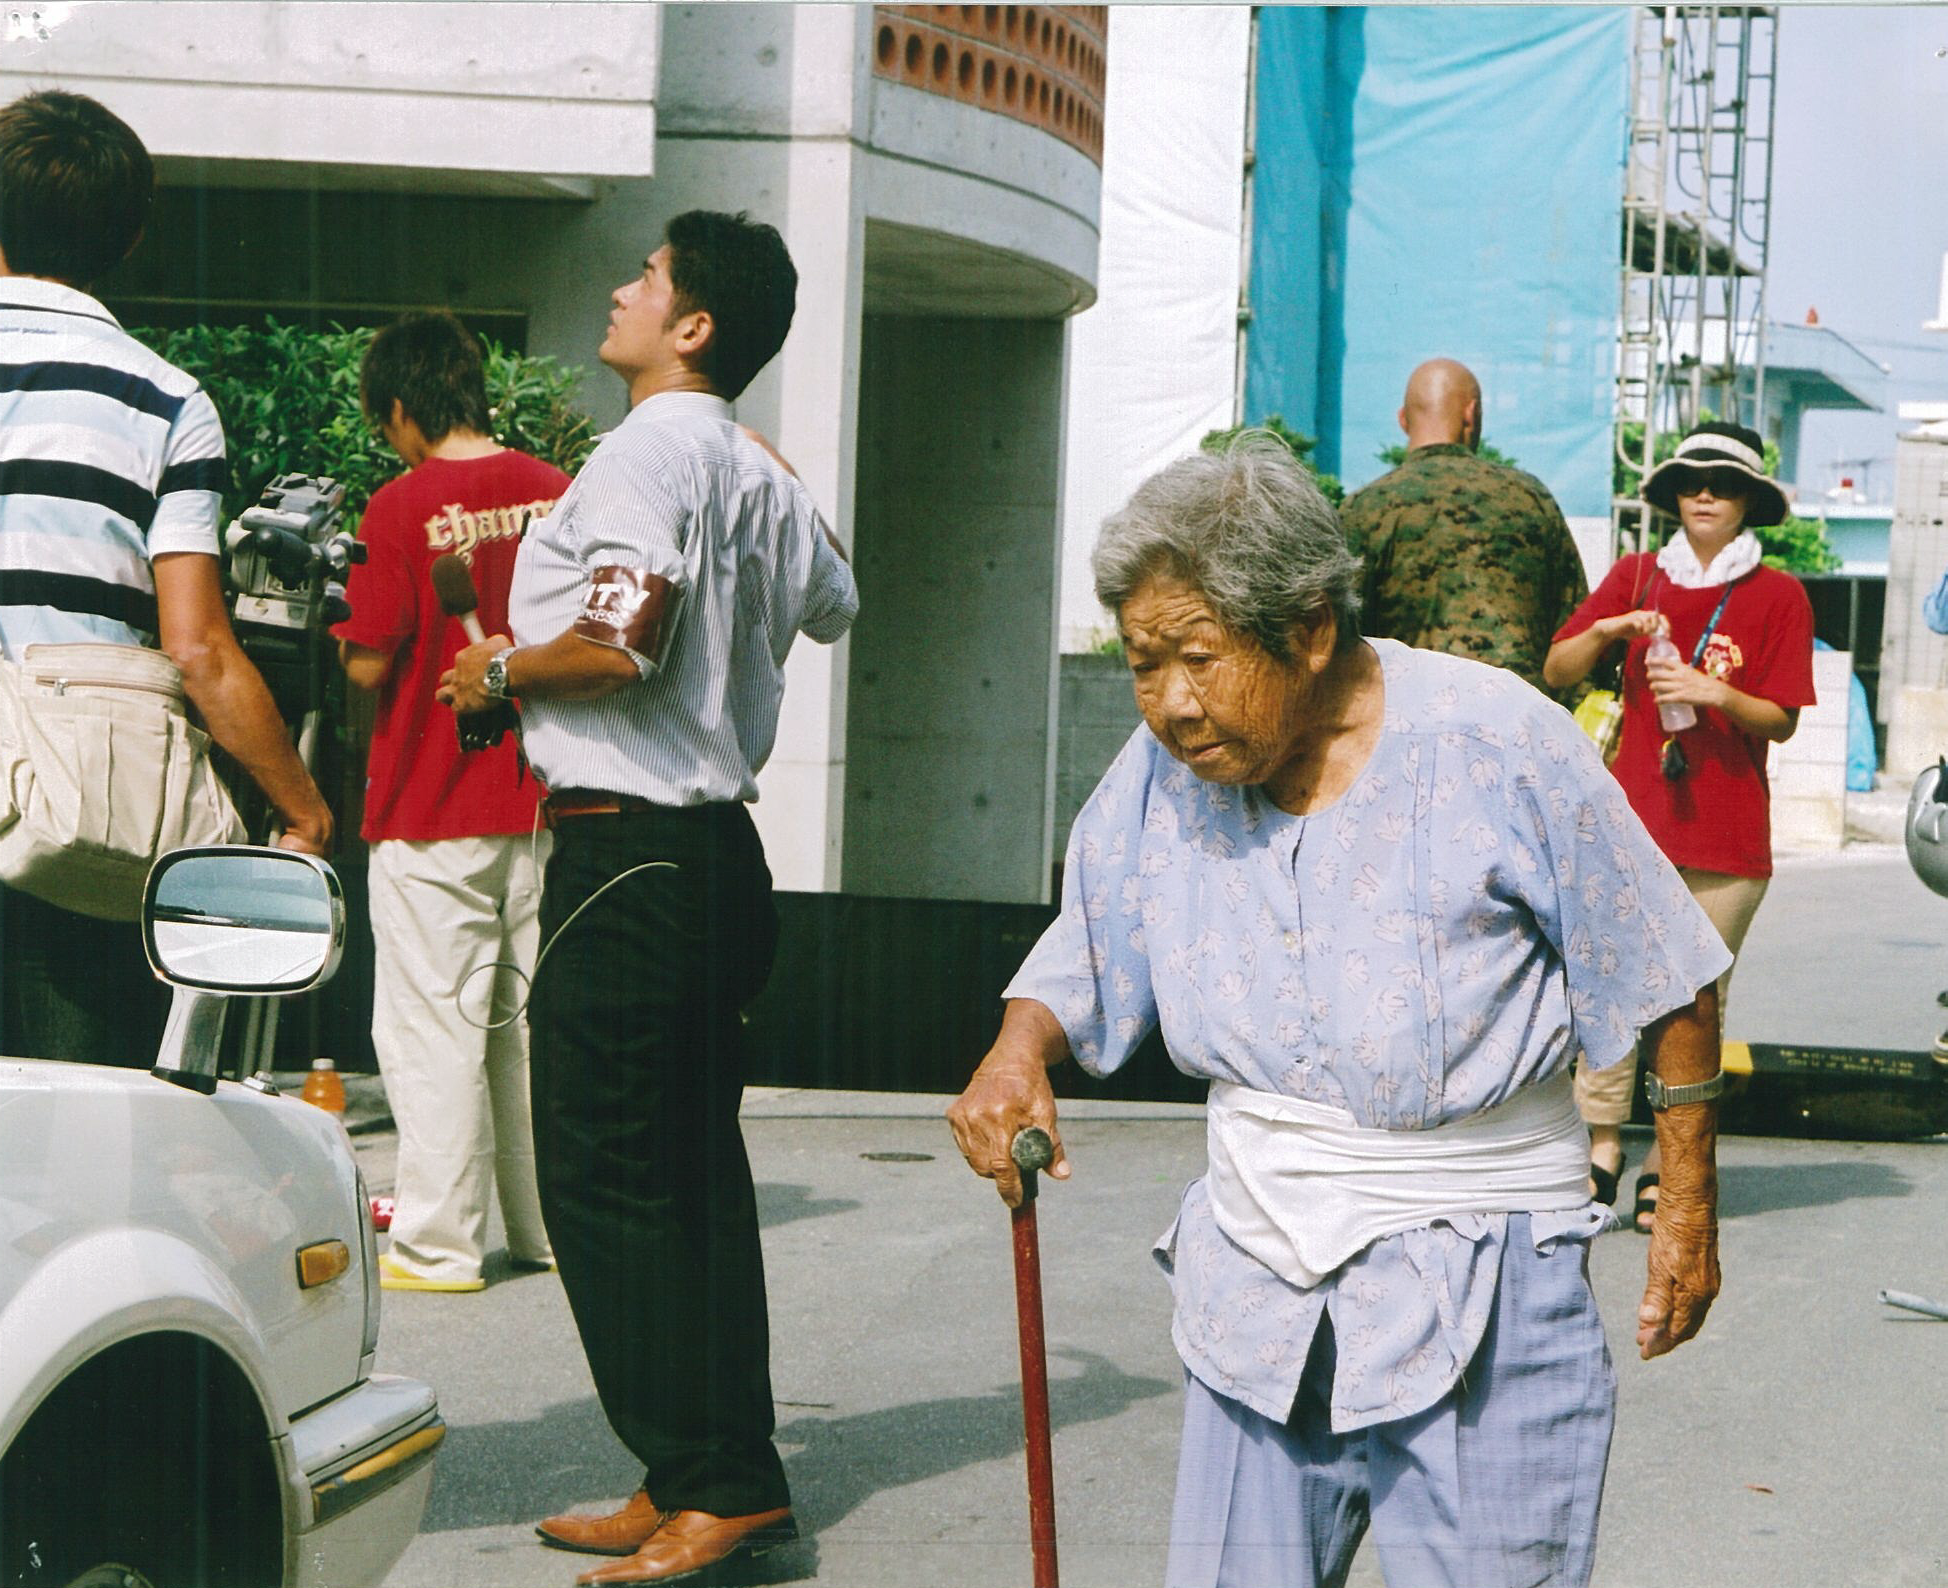 マイクをもった男性の後ろを紫のパジャマ姿の年配の女性が杖をついて歩いている写真